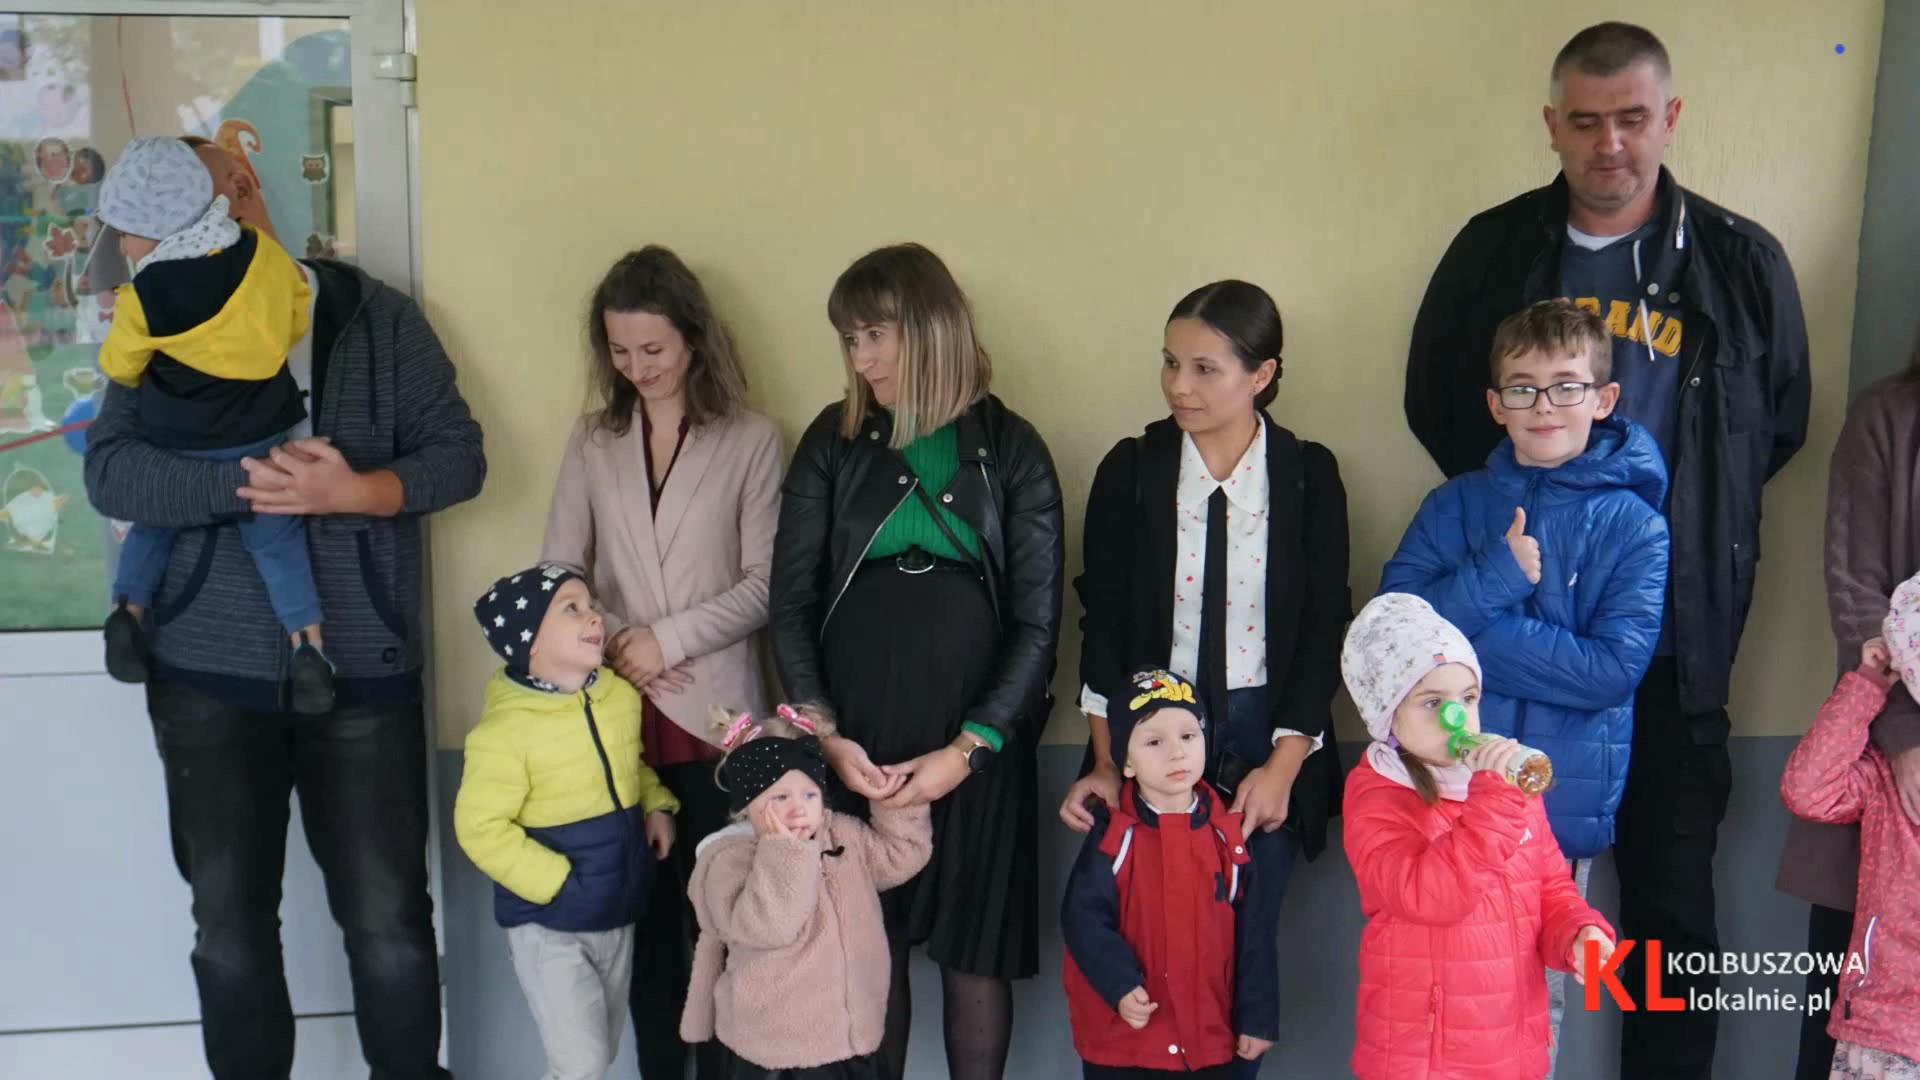 Pierwsze przedszkole językowe w Kolbuszowej oficjalnie otwarte! [FOTO, WIDEO]